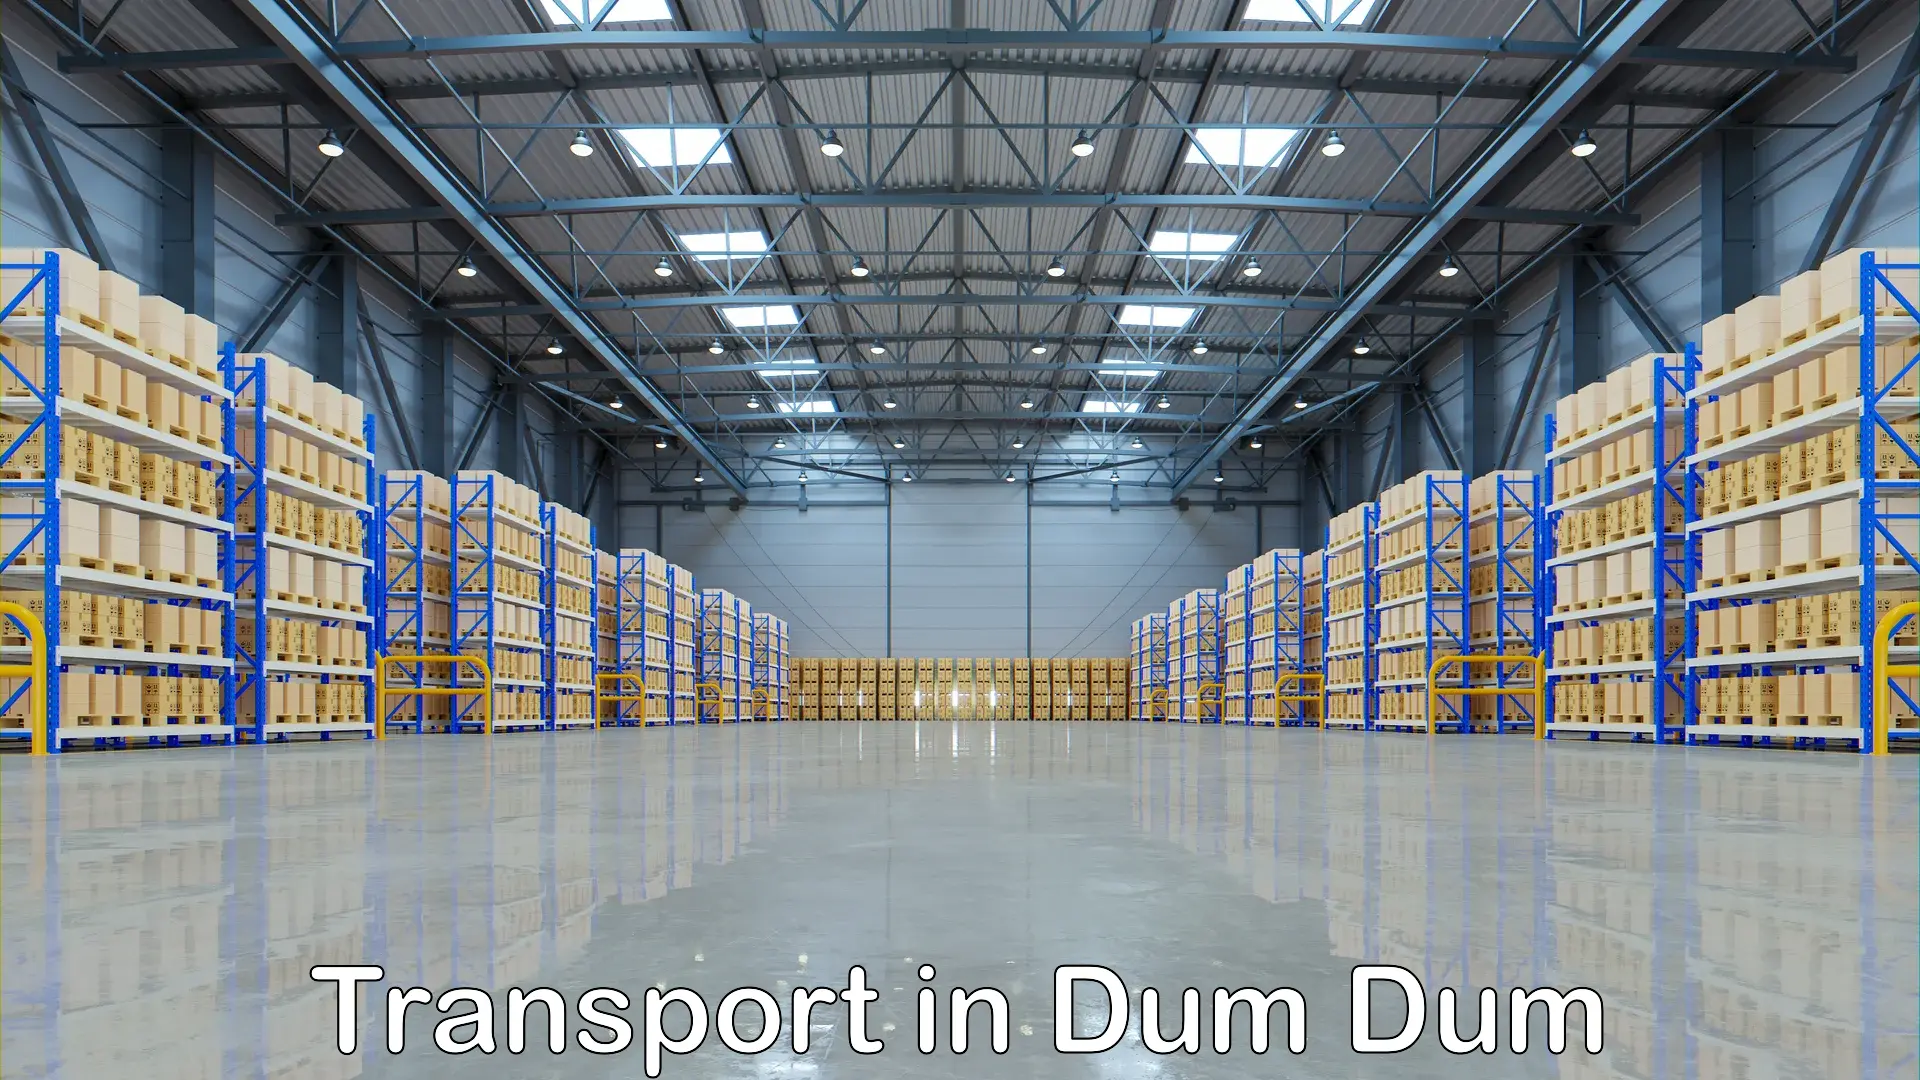 Intercity goods transport in Dum Dum